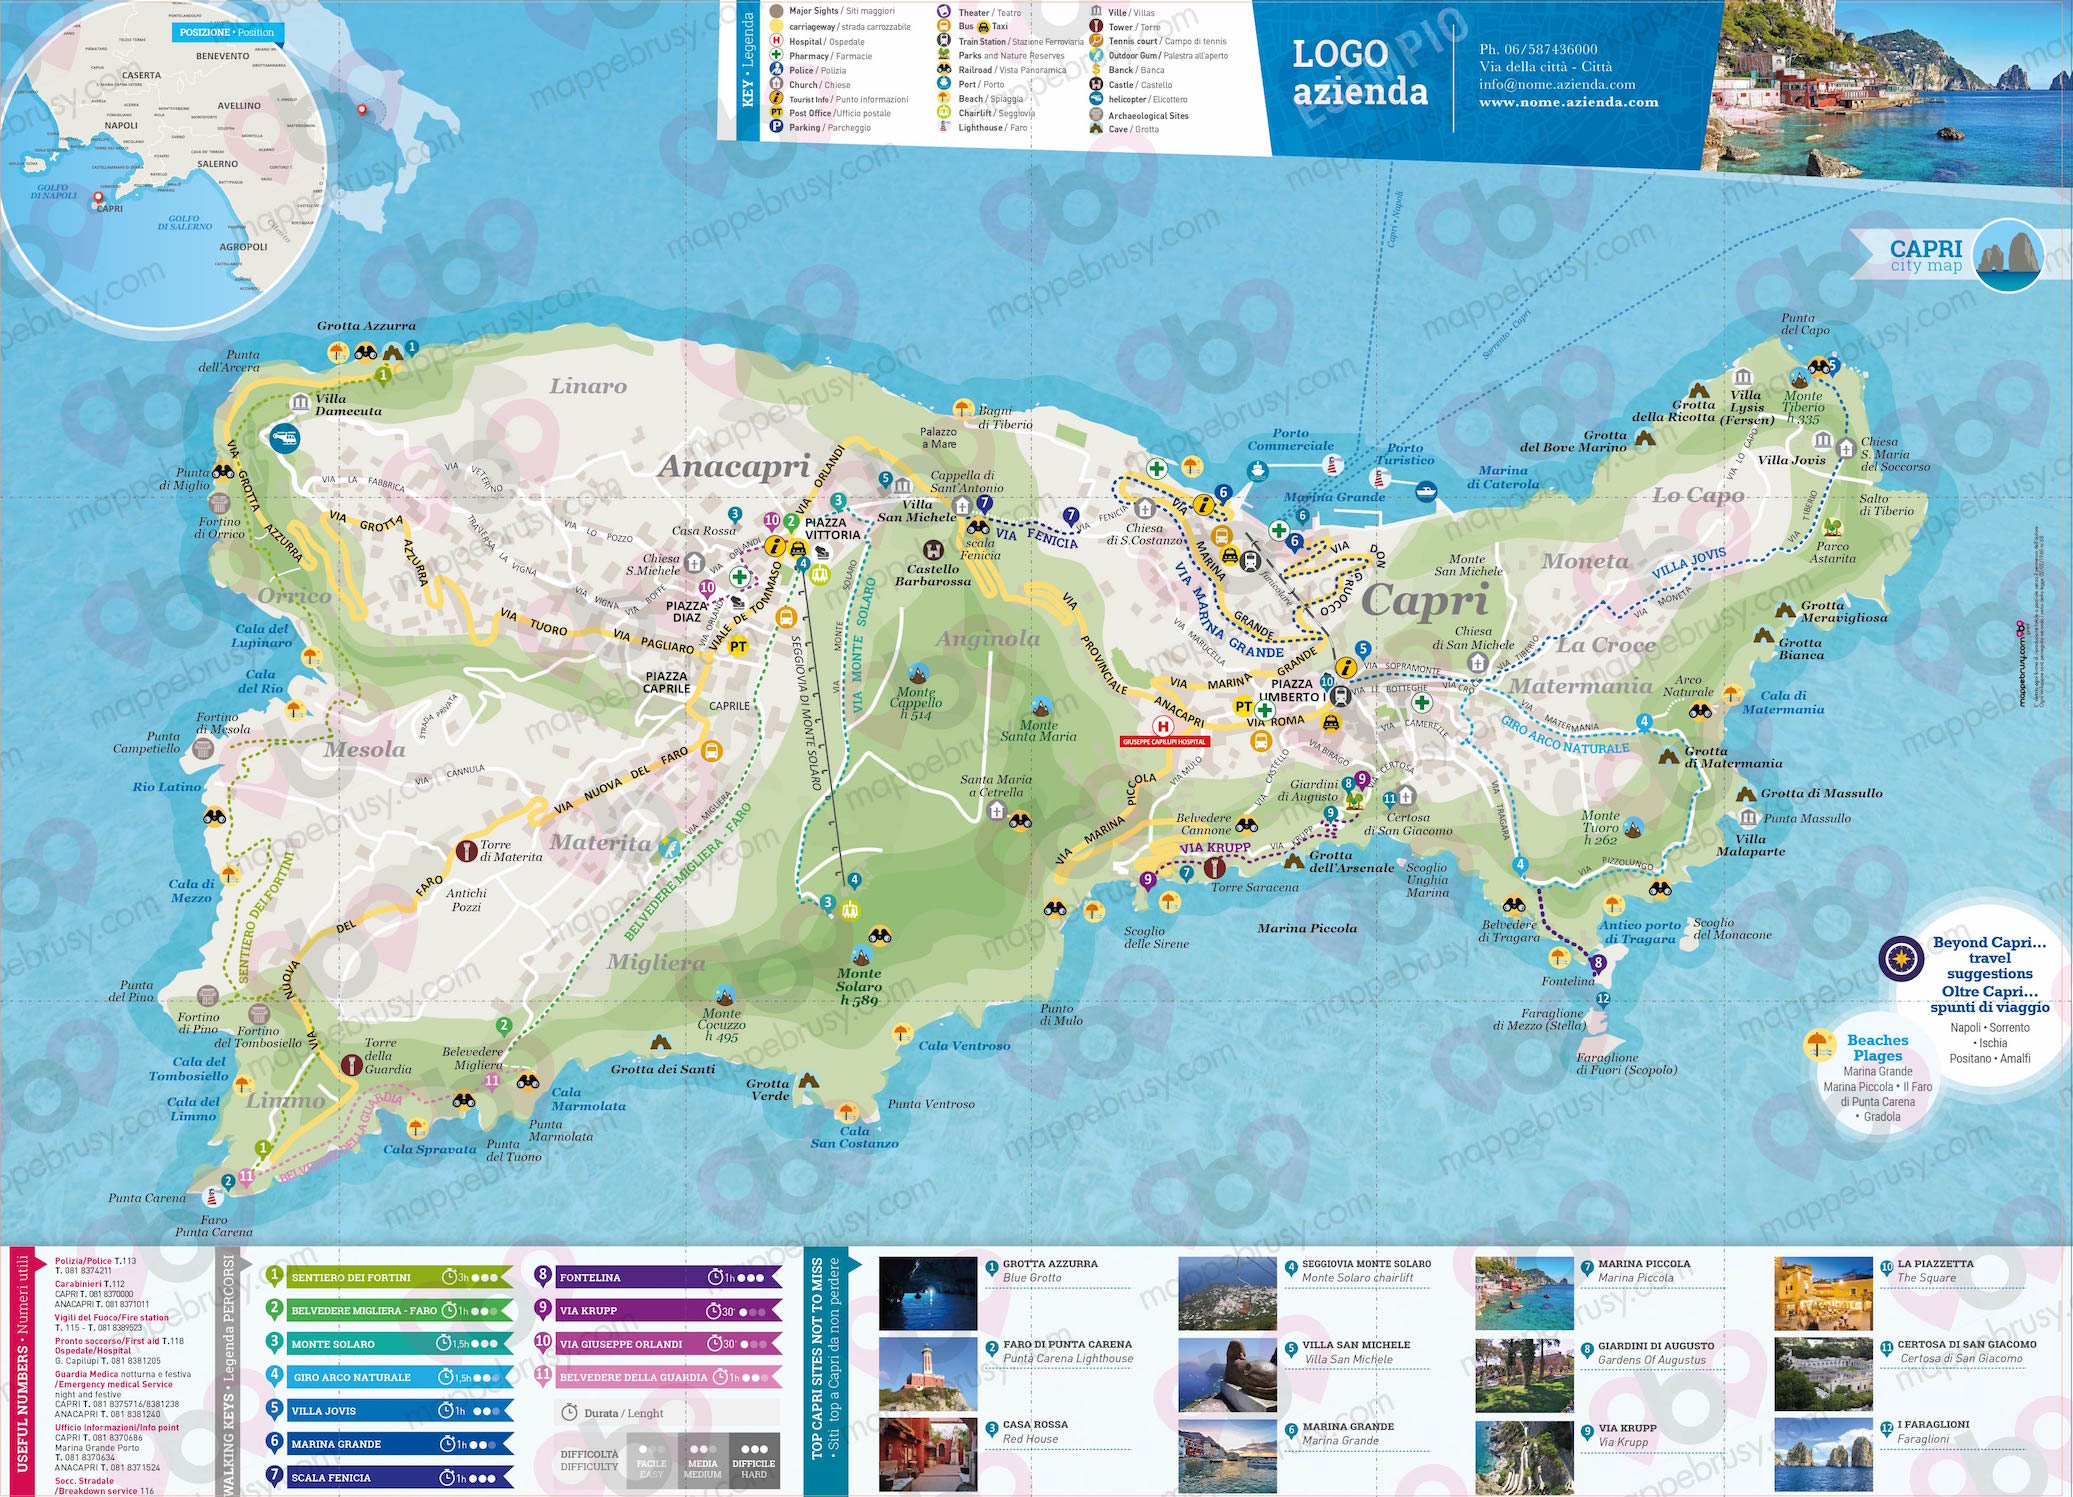 Mappa di Capri - Capri city map - mappa Capri - mappa personalizzata di Capri